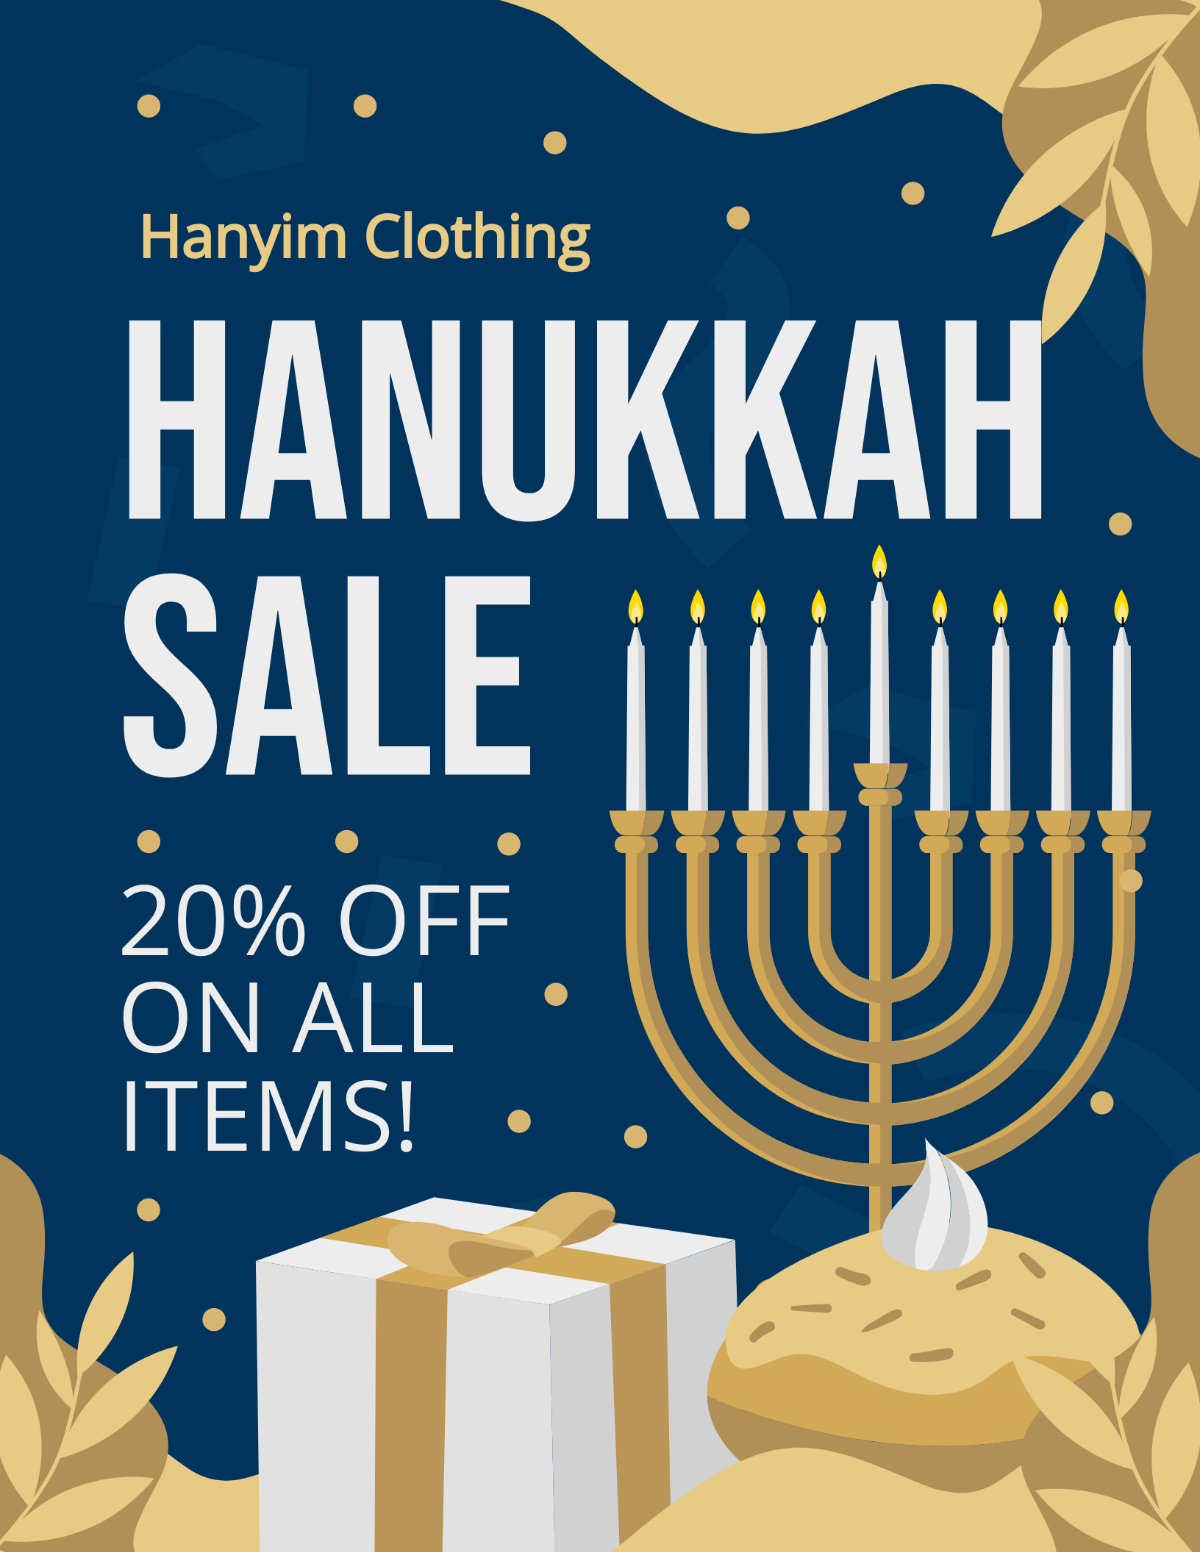 Hanukkah Sale Flyer